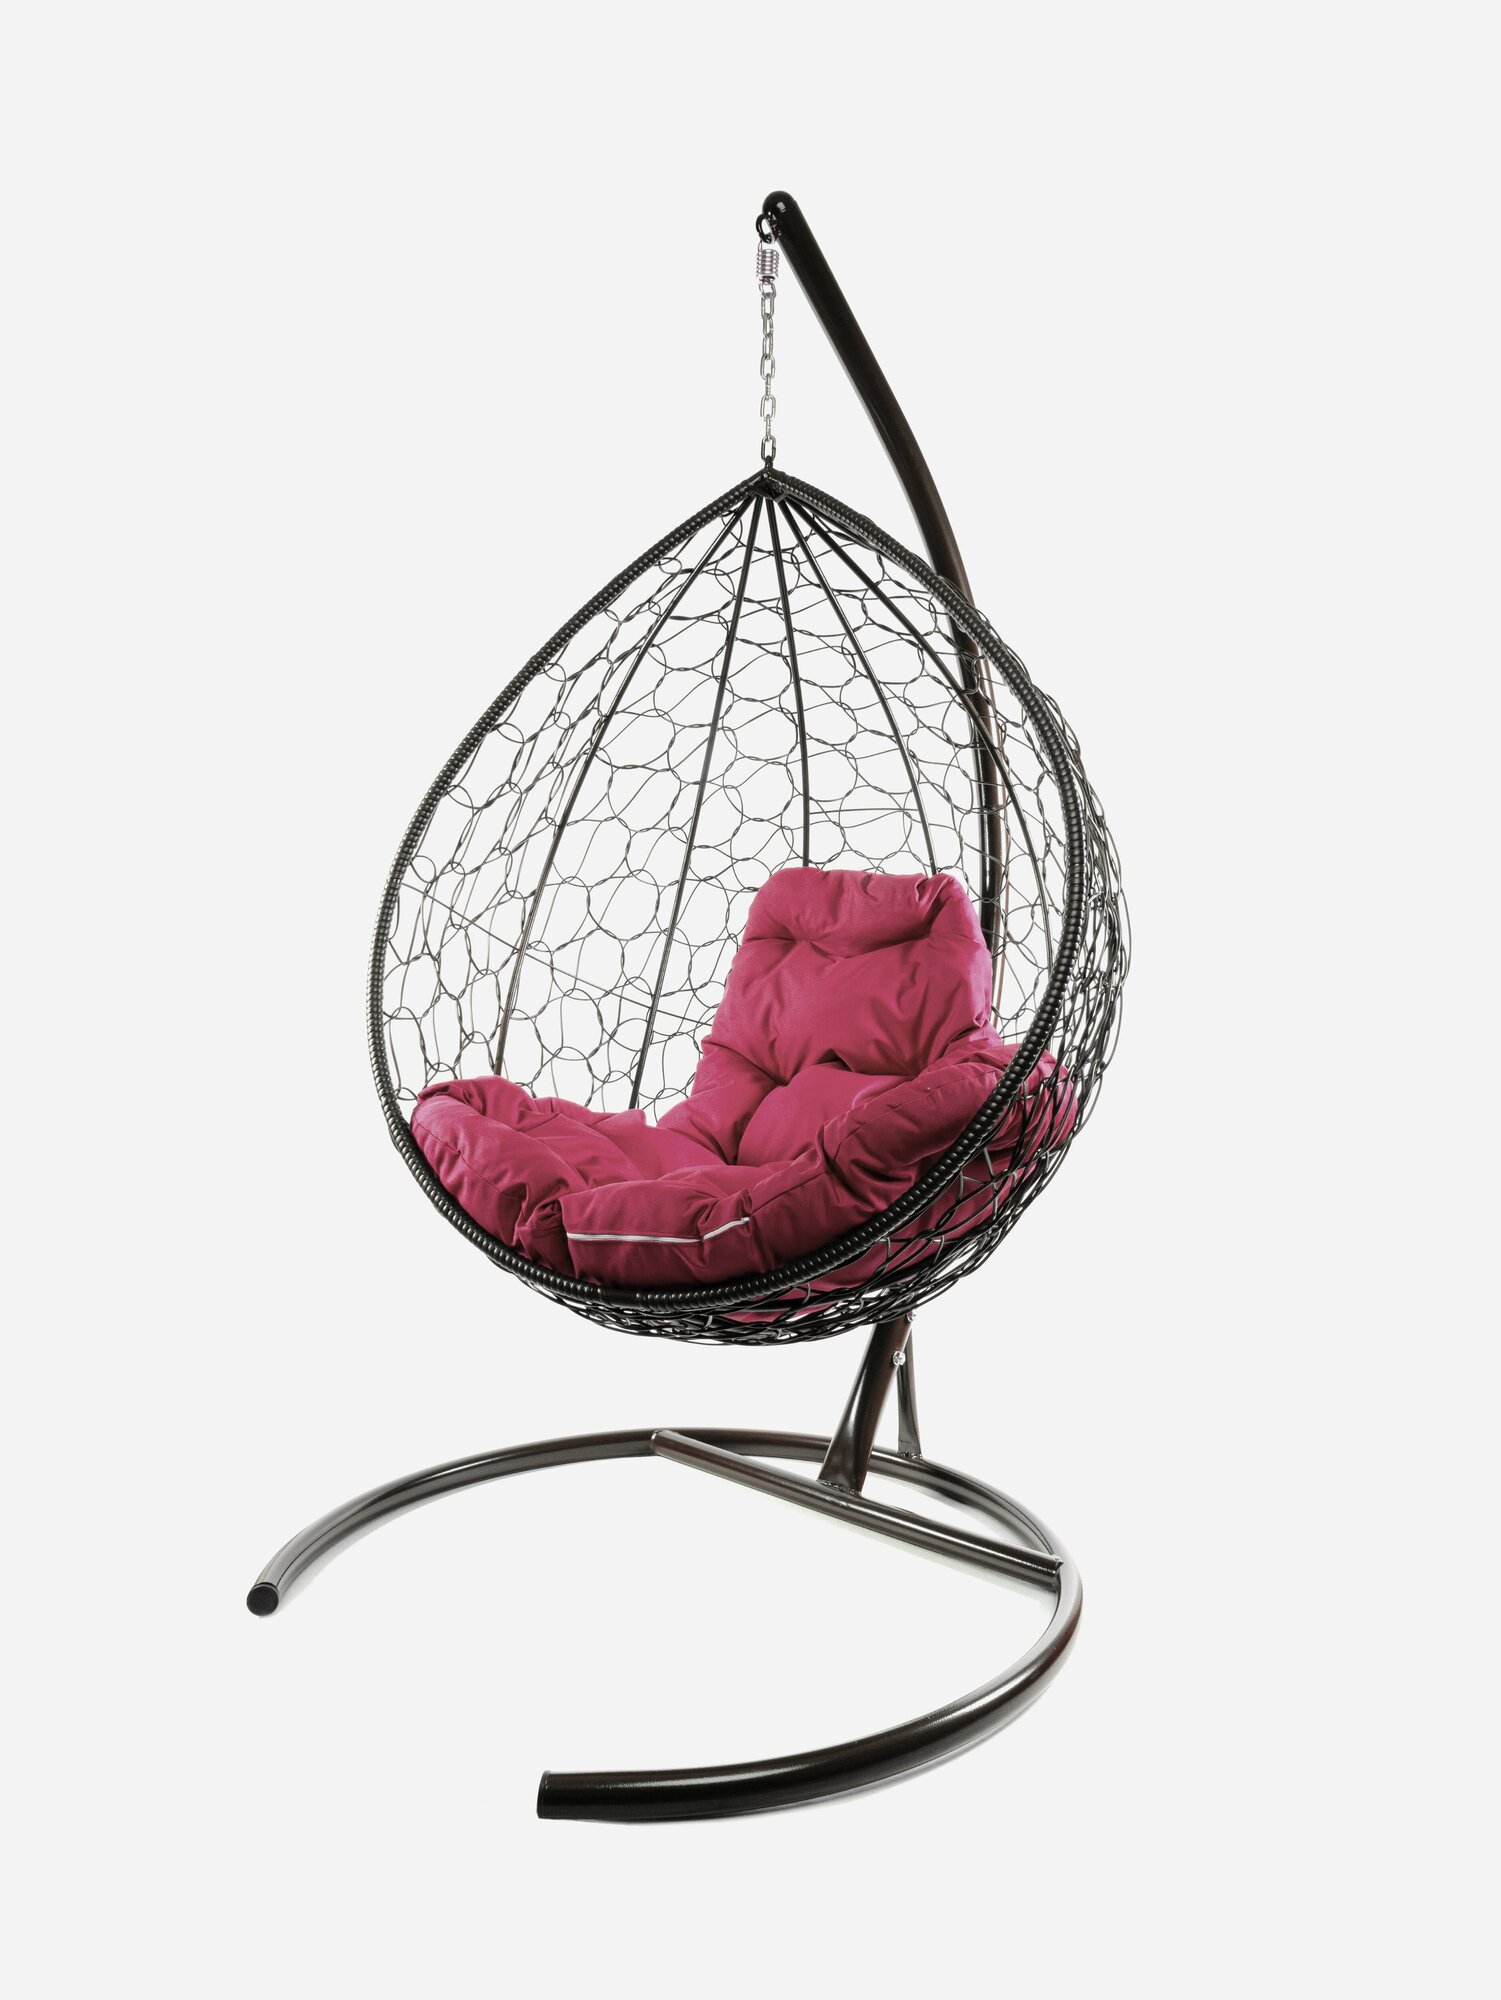 Подвесное кресло кокон M-group капля с ротангом коричневое+бордовая подушка